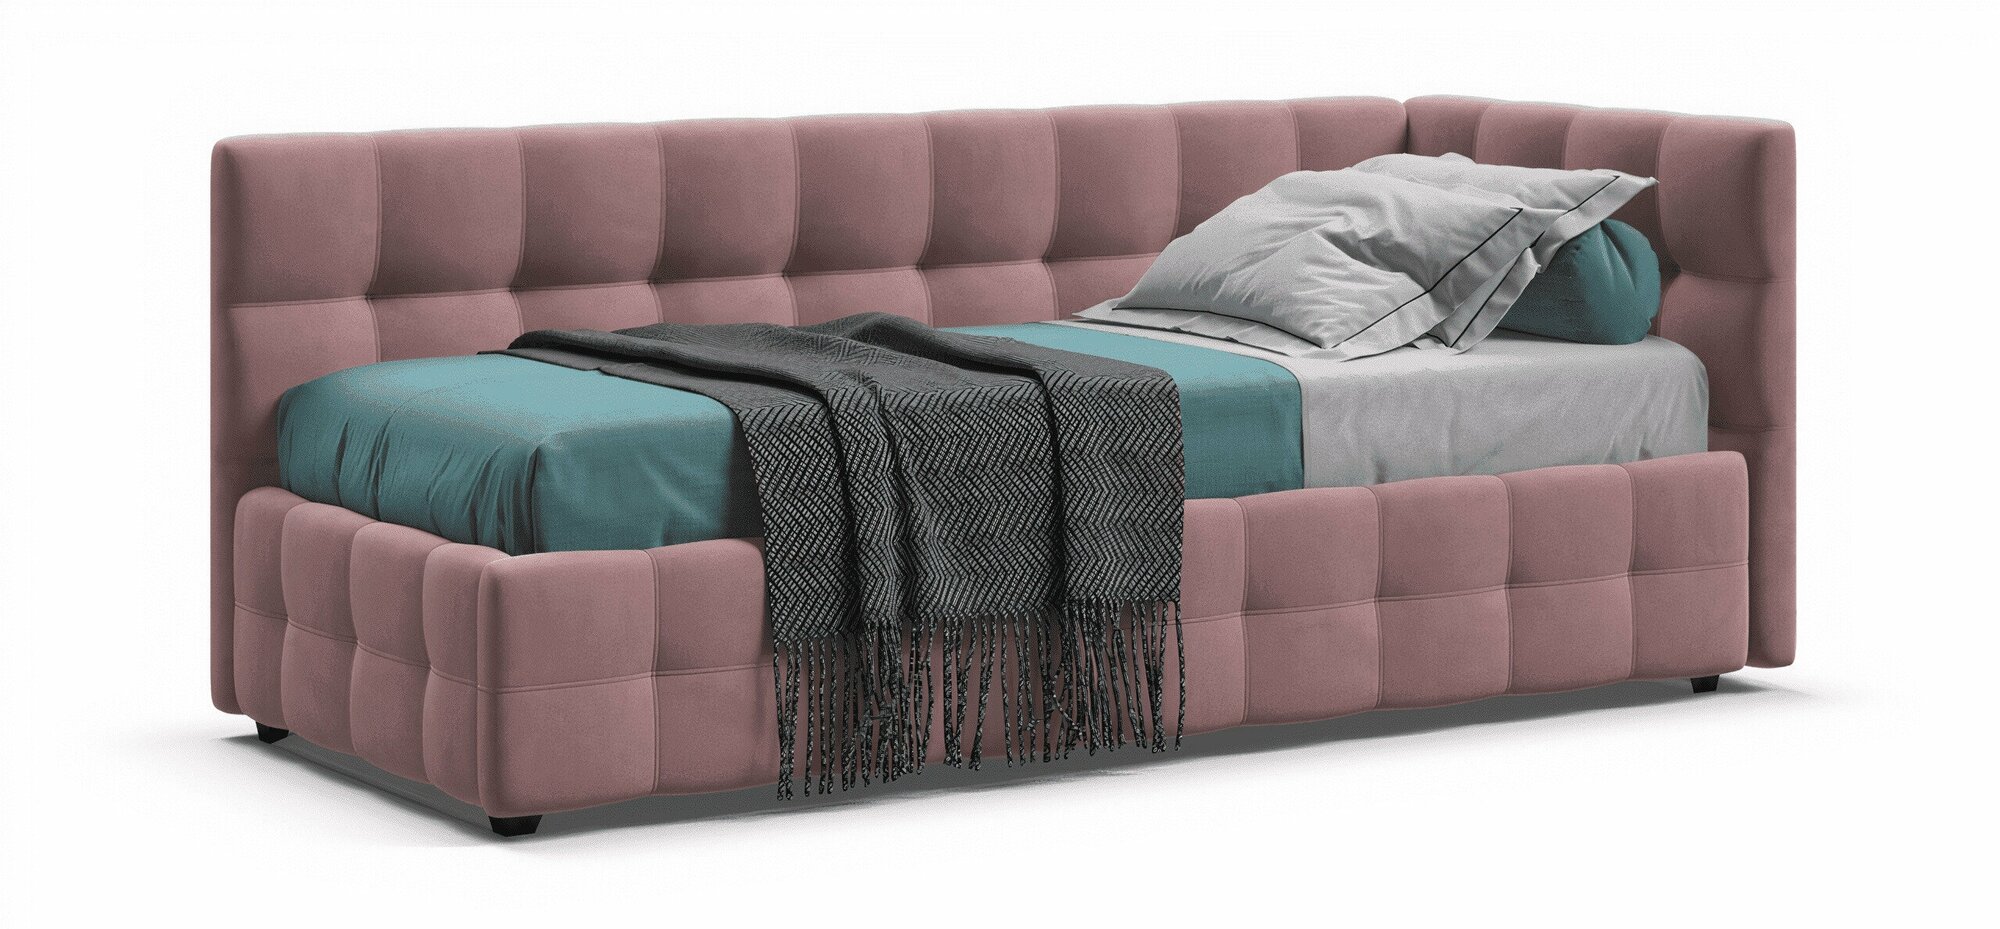 Односпальная кровать BOSS Sleep mini, с ящиками для хранения, велюр Monolit роуз, 90х200 см